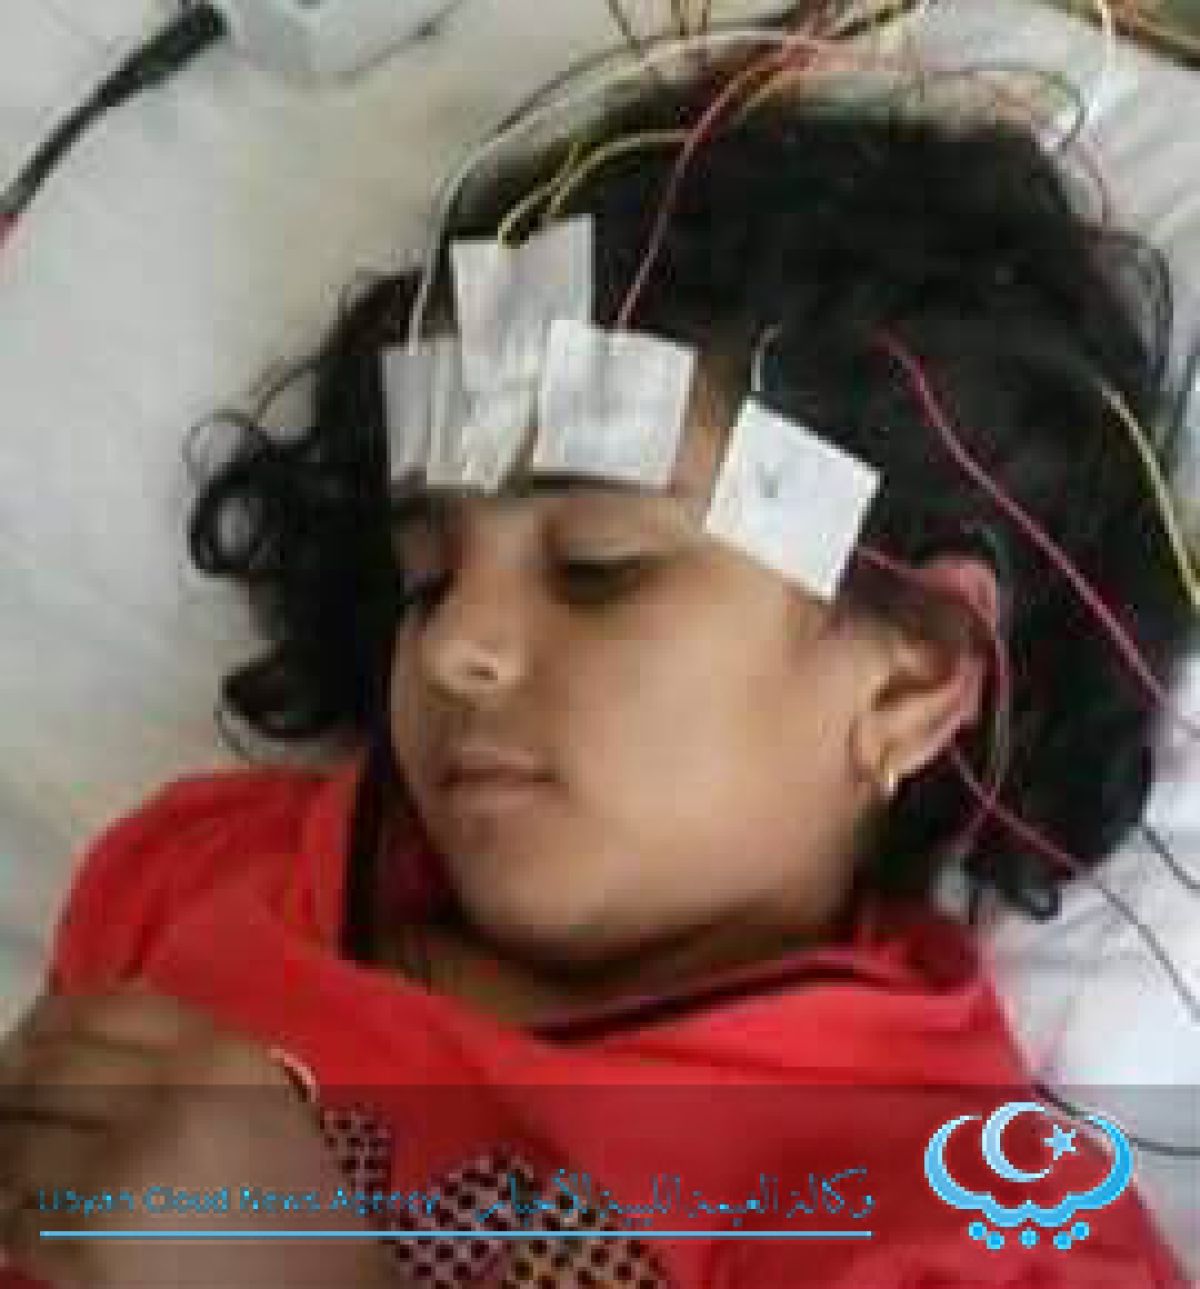 الطفلة الليبية المهاجرة تجري عملية زرع نخاع